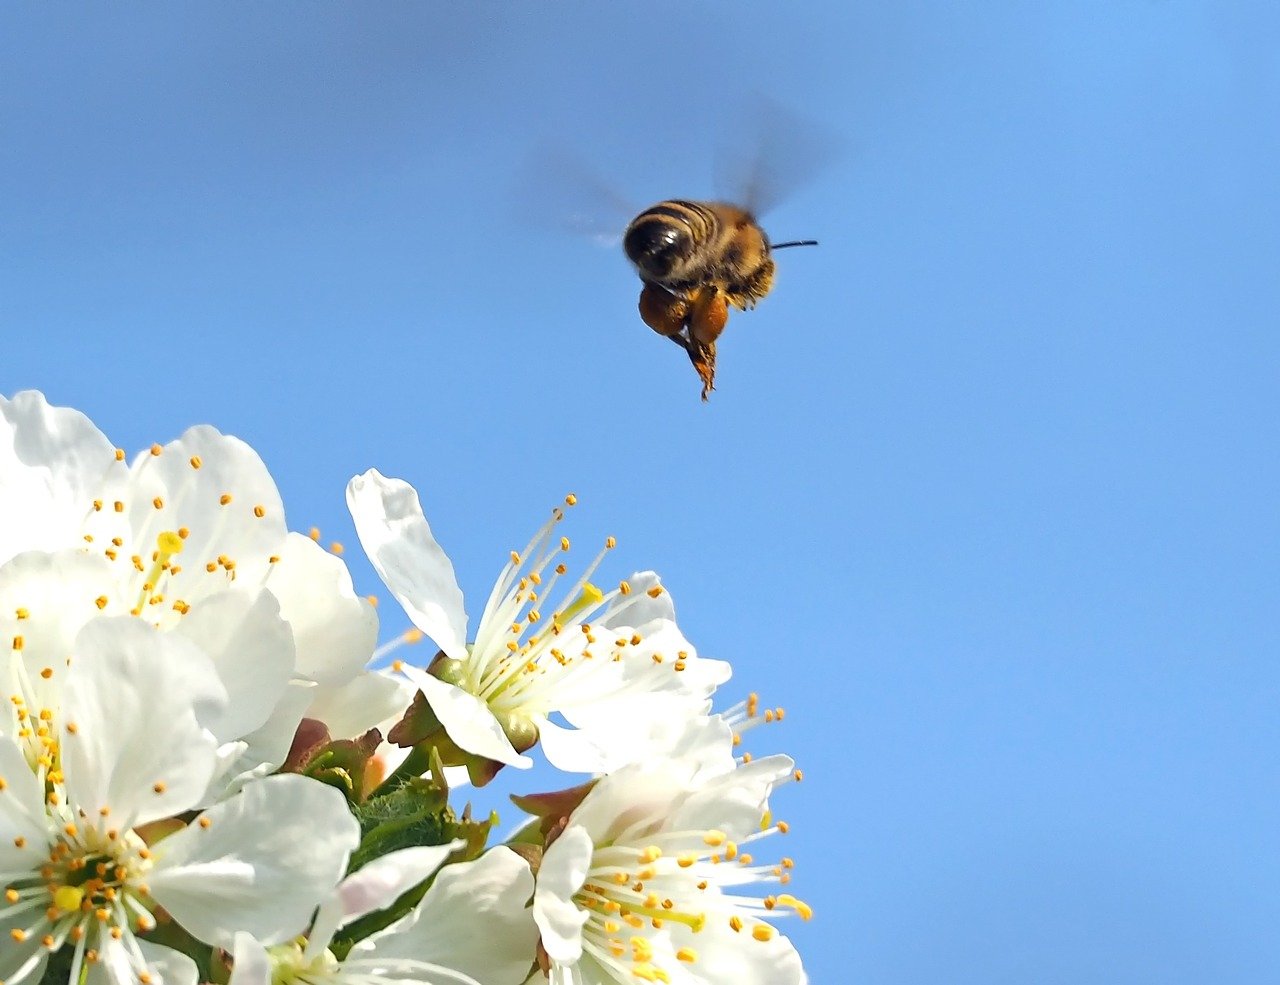 la valeur économique des insectes pollinisateurs s’est élevée à 34 milliards de dollars aux États-Unis